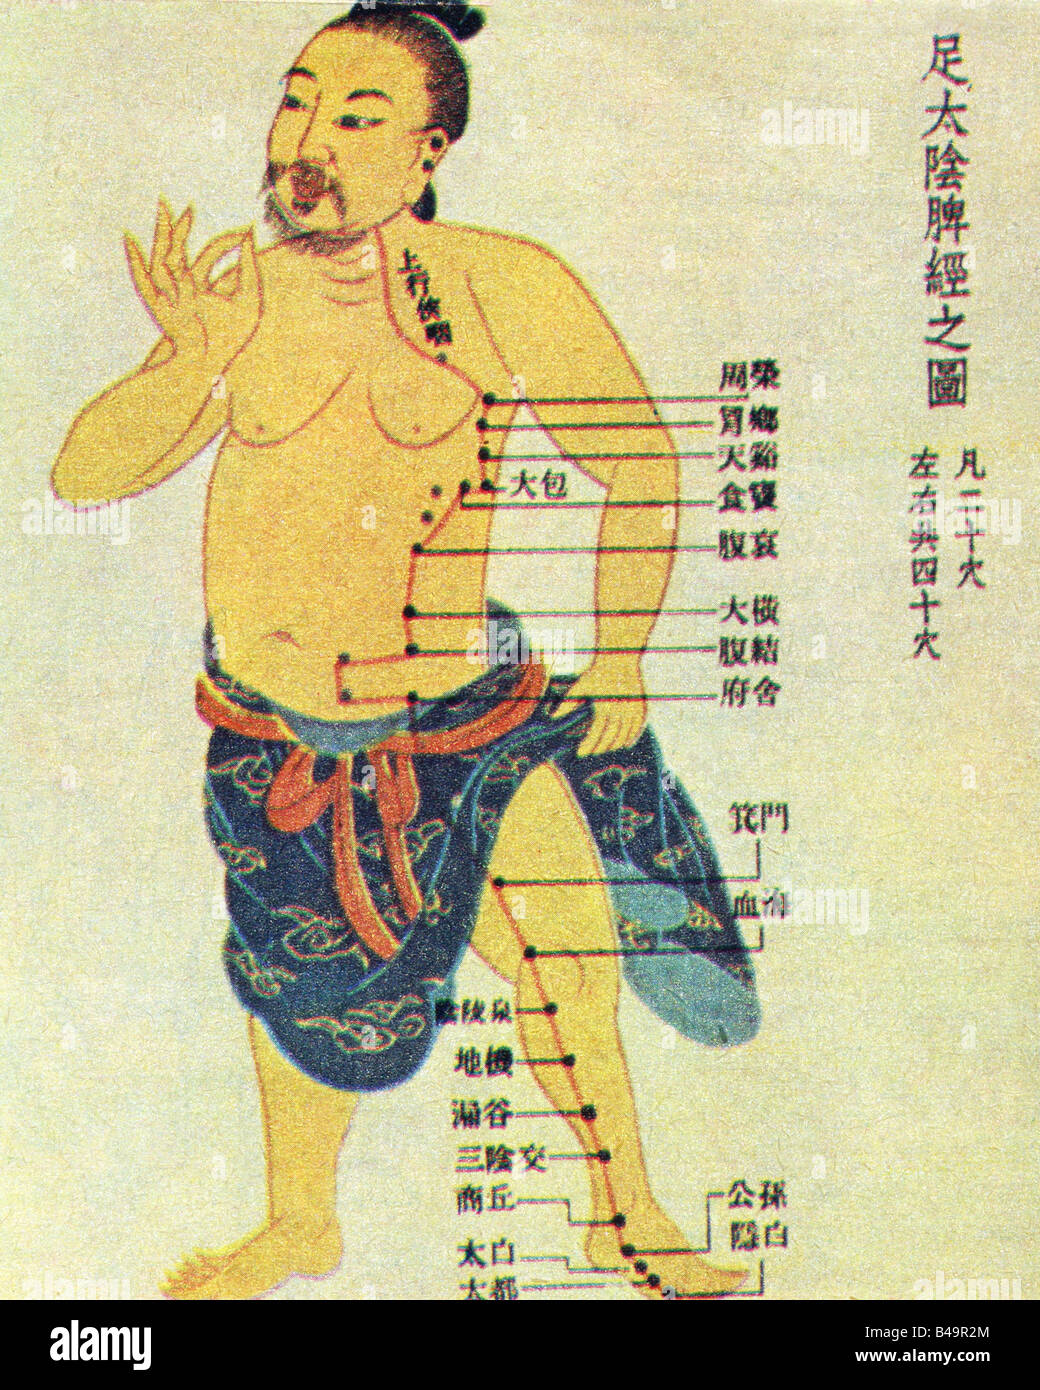 la-medecine-lacupuncture-chinoise-carte-dynastie-ming-1369-1644-le-rein-meridien-imprimer-historique-historique-la-chine-lasie-le-medi-b49r2m